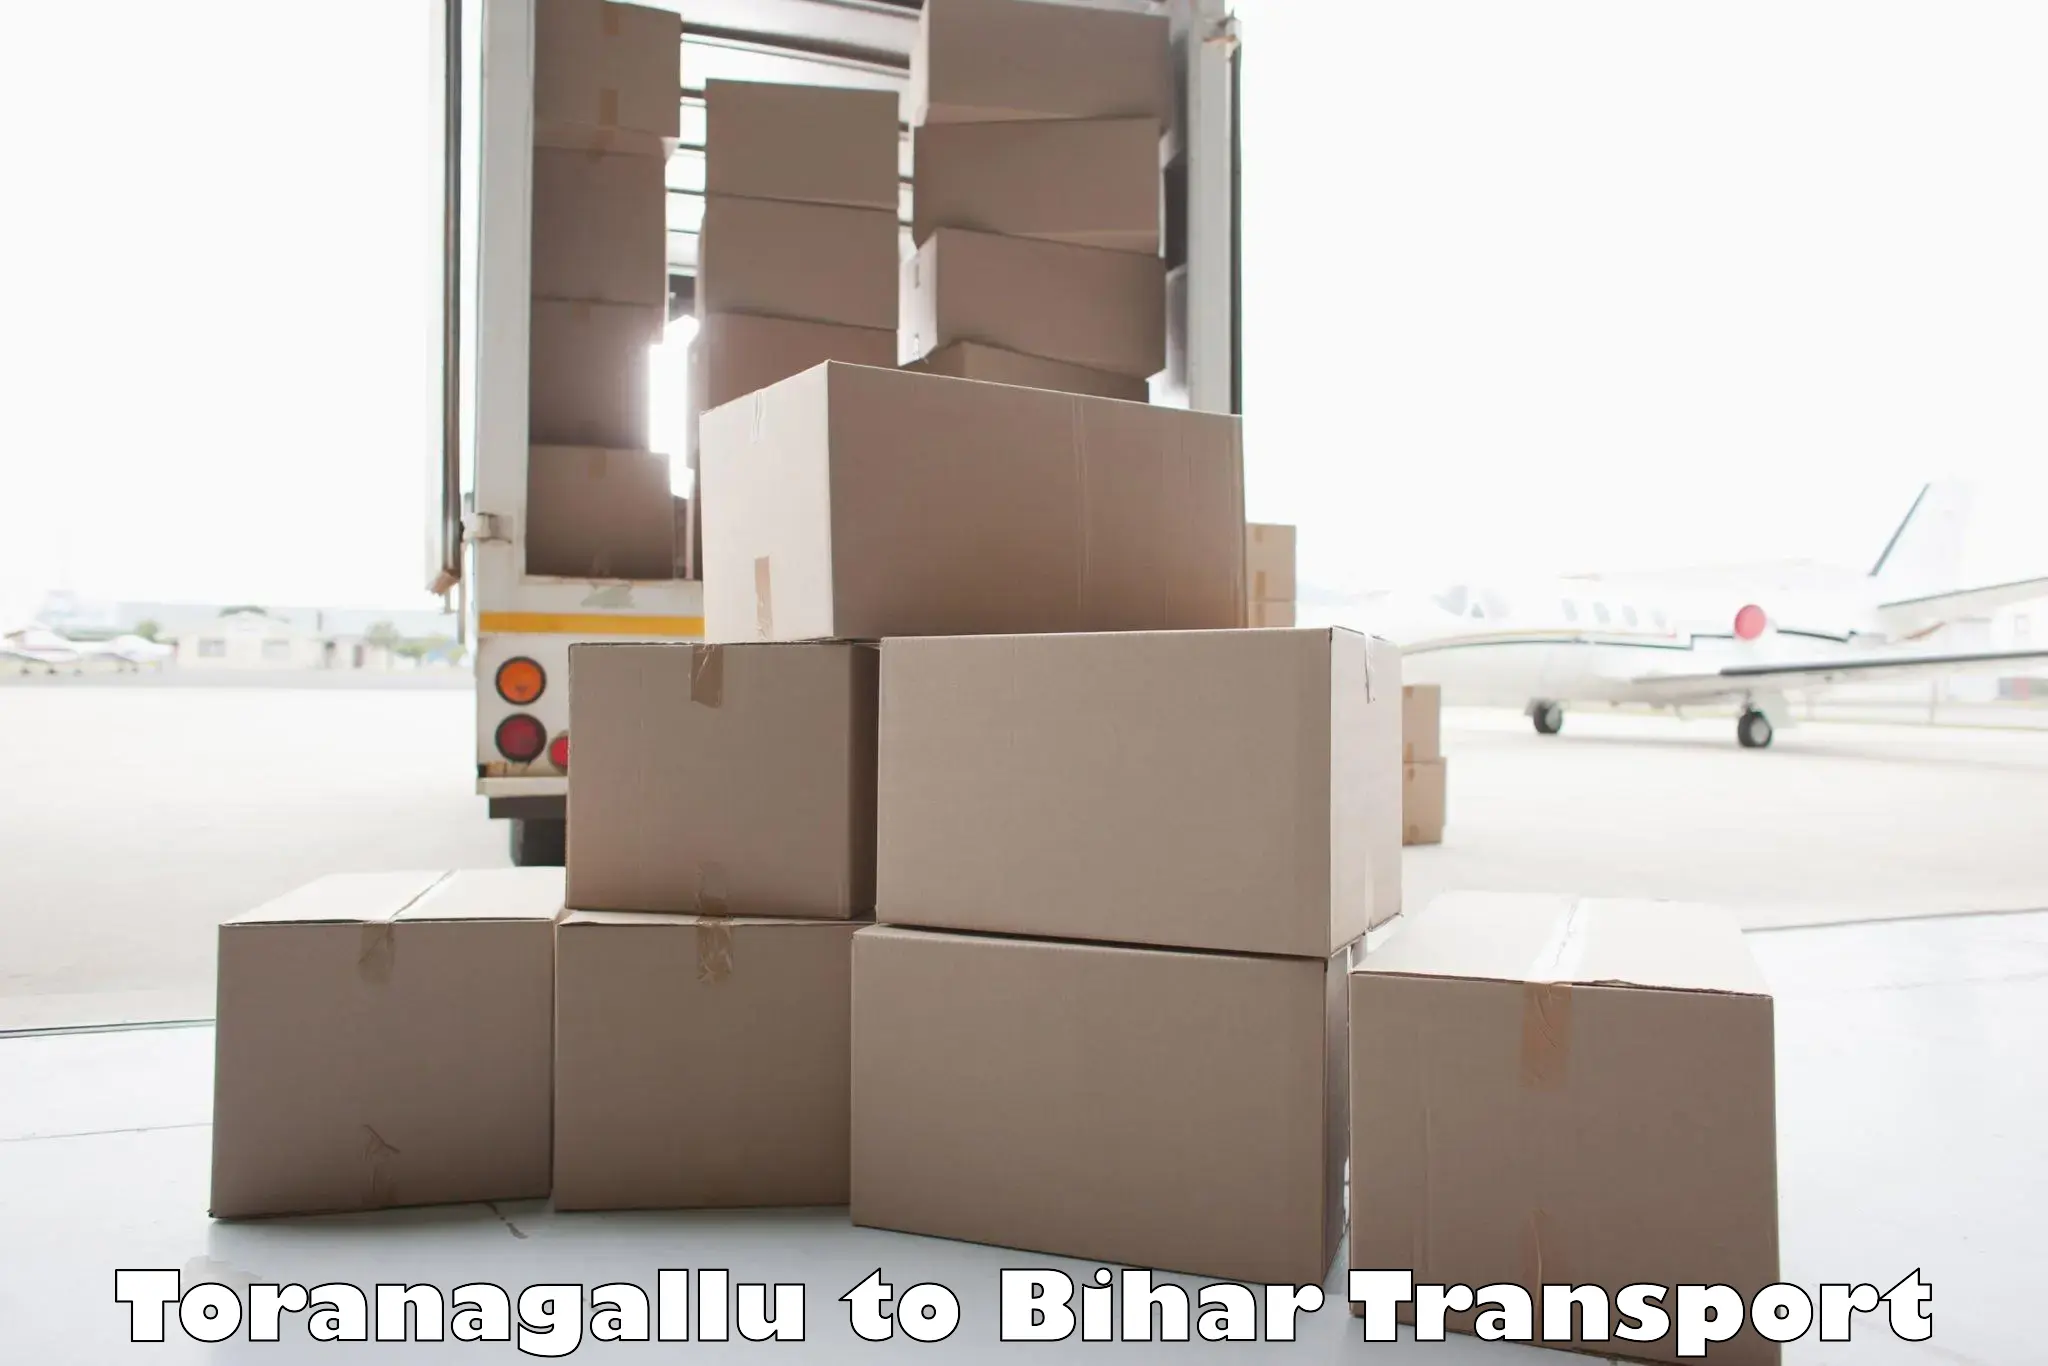 Vehicle courier services in Toranagallu to Bhorey